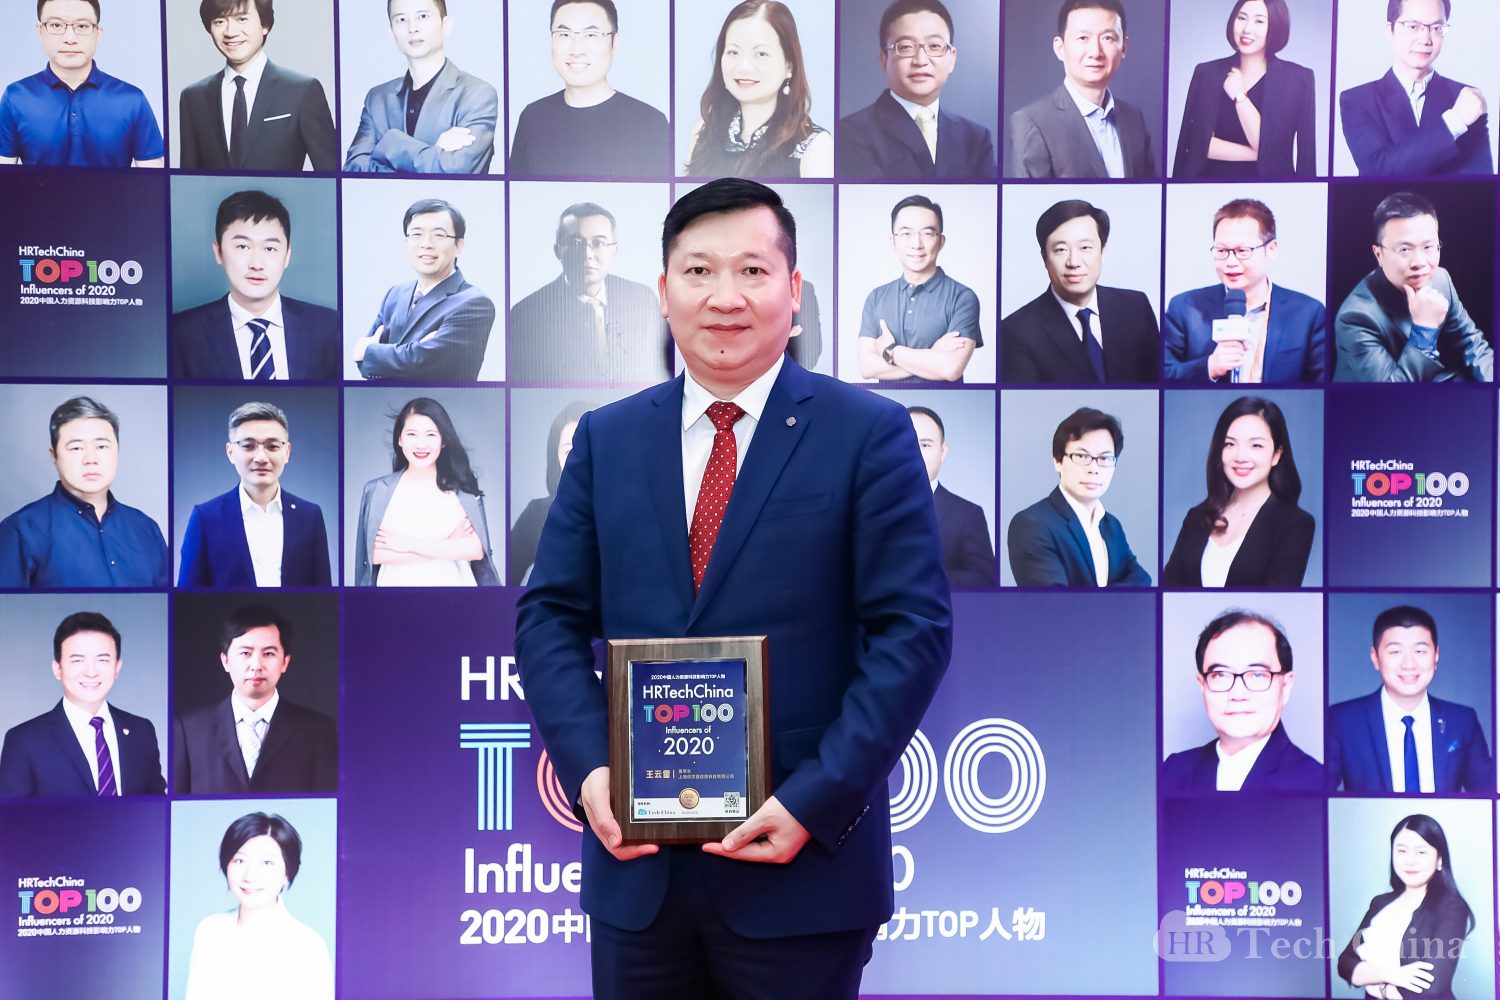 優藍國際董事長王云雷榮獲“2020中國人力資源科技影響力TOP100人物榜單”榮譽 